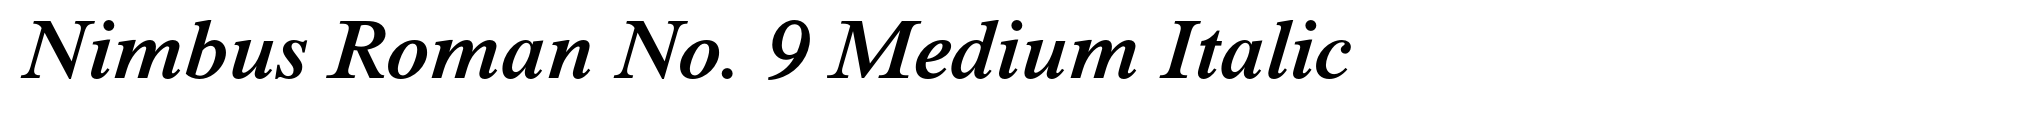 Nimbus Roman No. 9 Medium Italic image